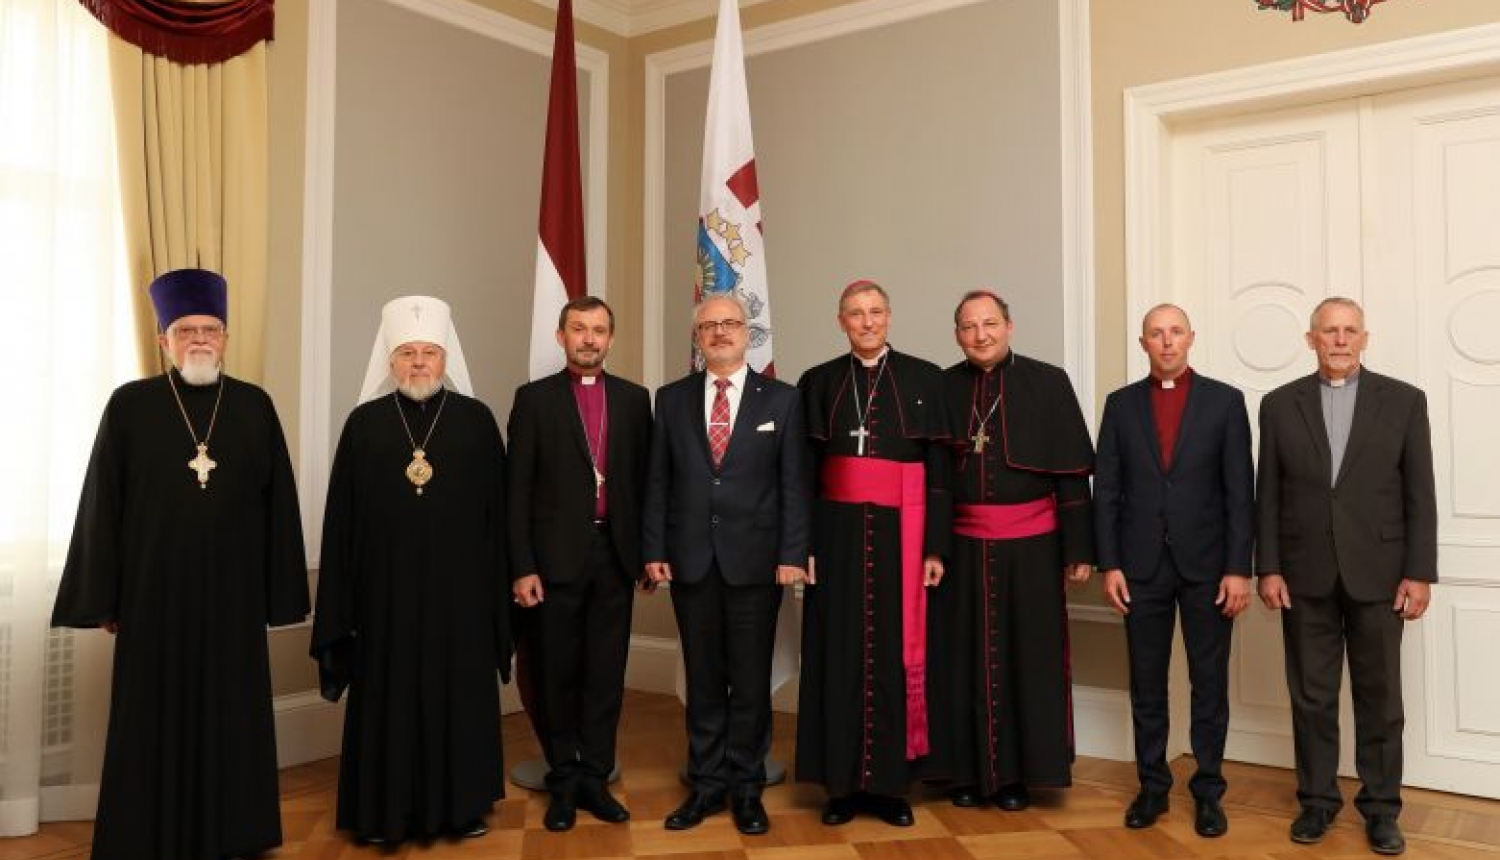 Valsts prezidenta sarunā ar Latvijas lielāko baznīcu vadītājiem uzsver solidaritāti sabiedrībā